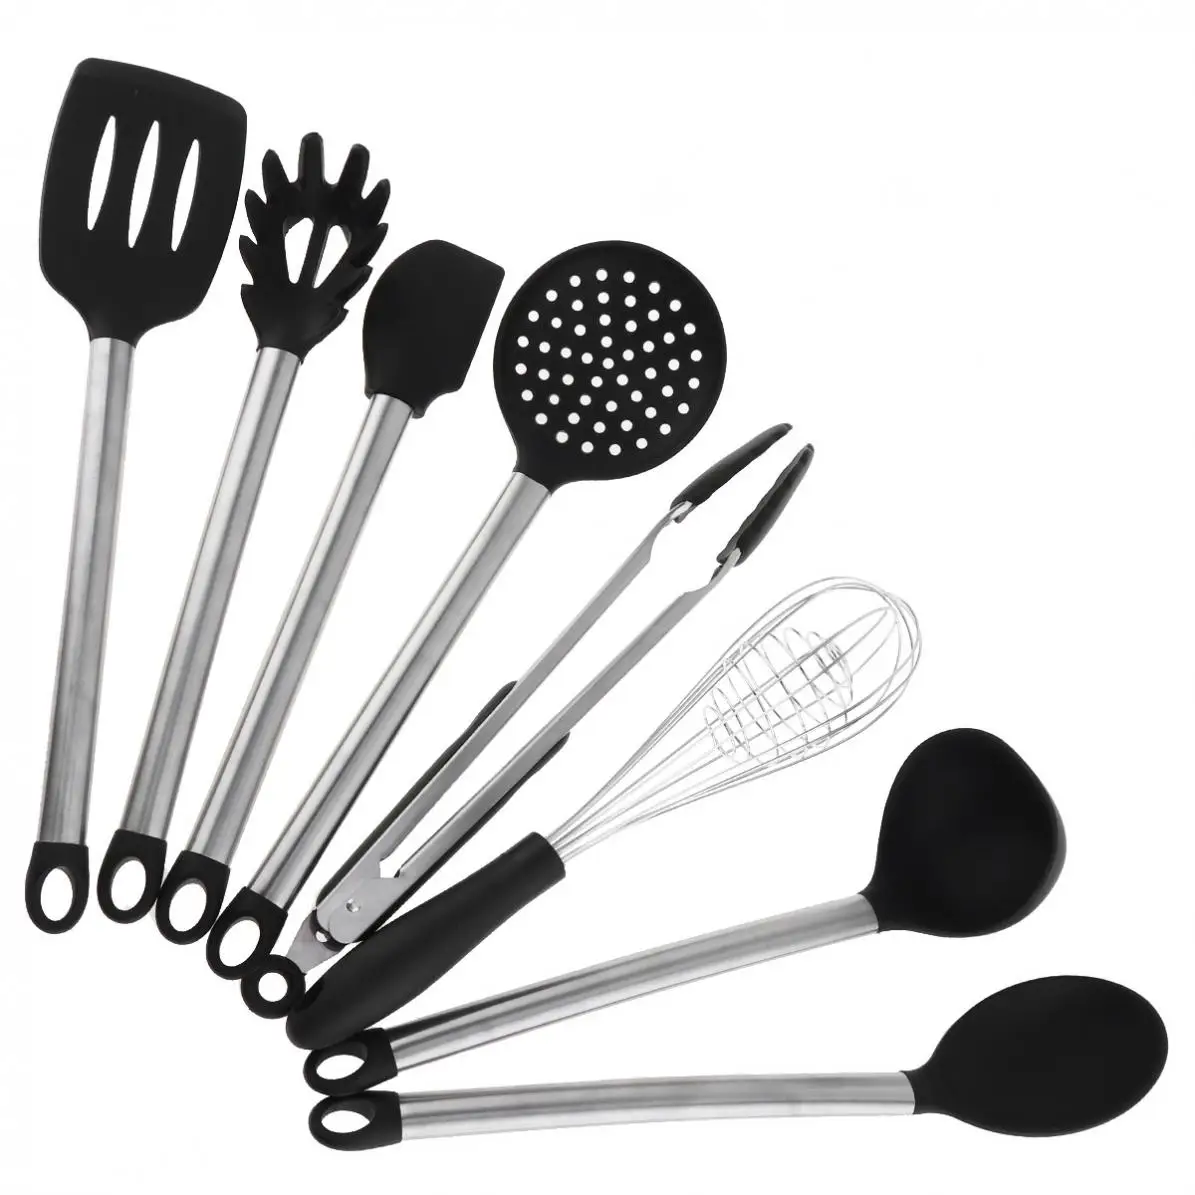 8 шт./лот, гибкие силиконовые инструменты для приготовления пищи, кухонные принадлежности, антипригарный инструмент для выпечки с круглой ручкой и бигуди